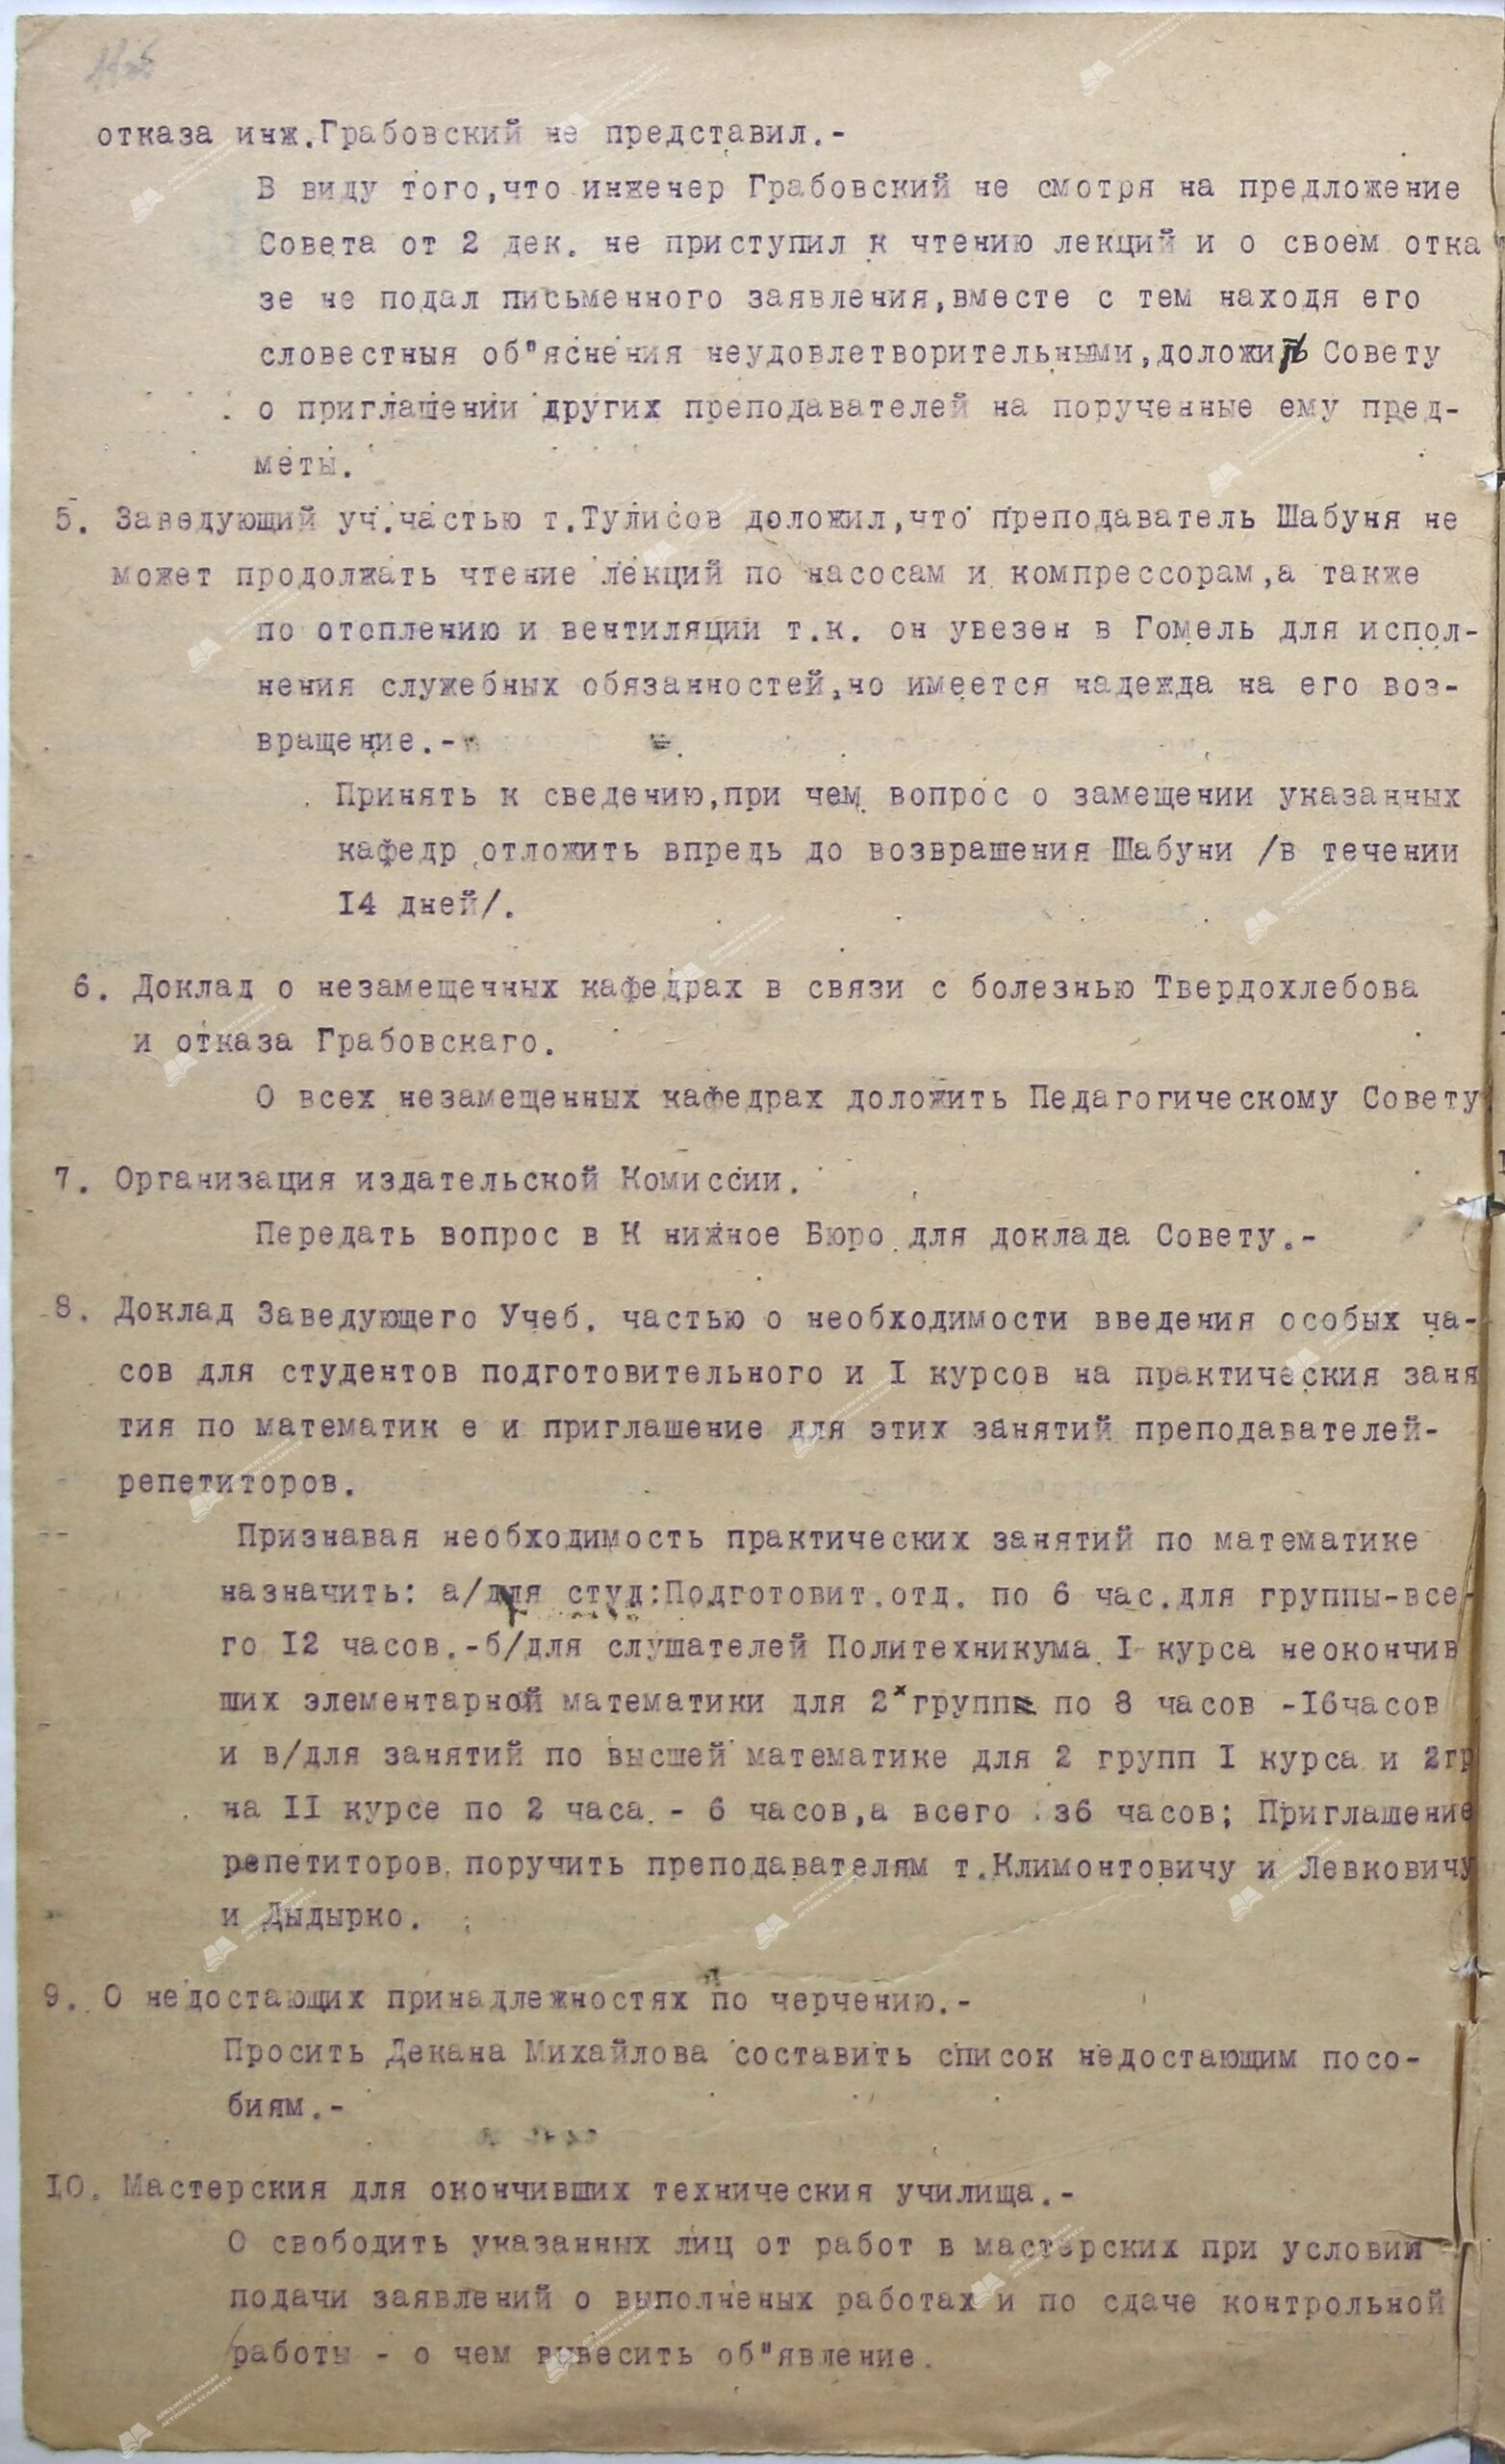 Протокол от 10 декабря 1920 г. №4 Заседания Совета деканов-стр. 1